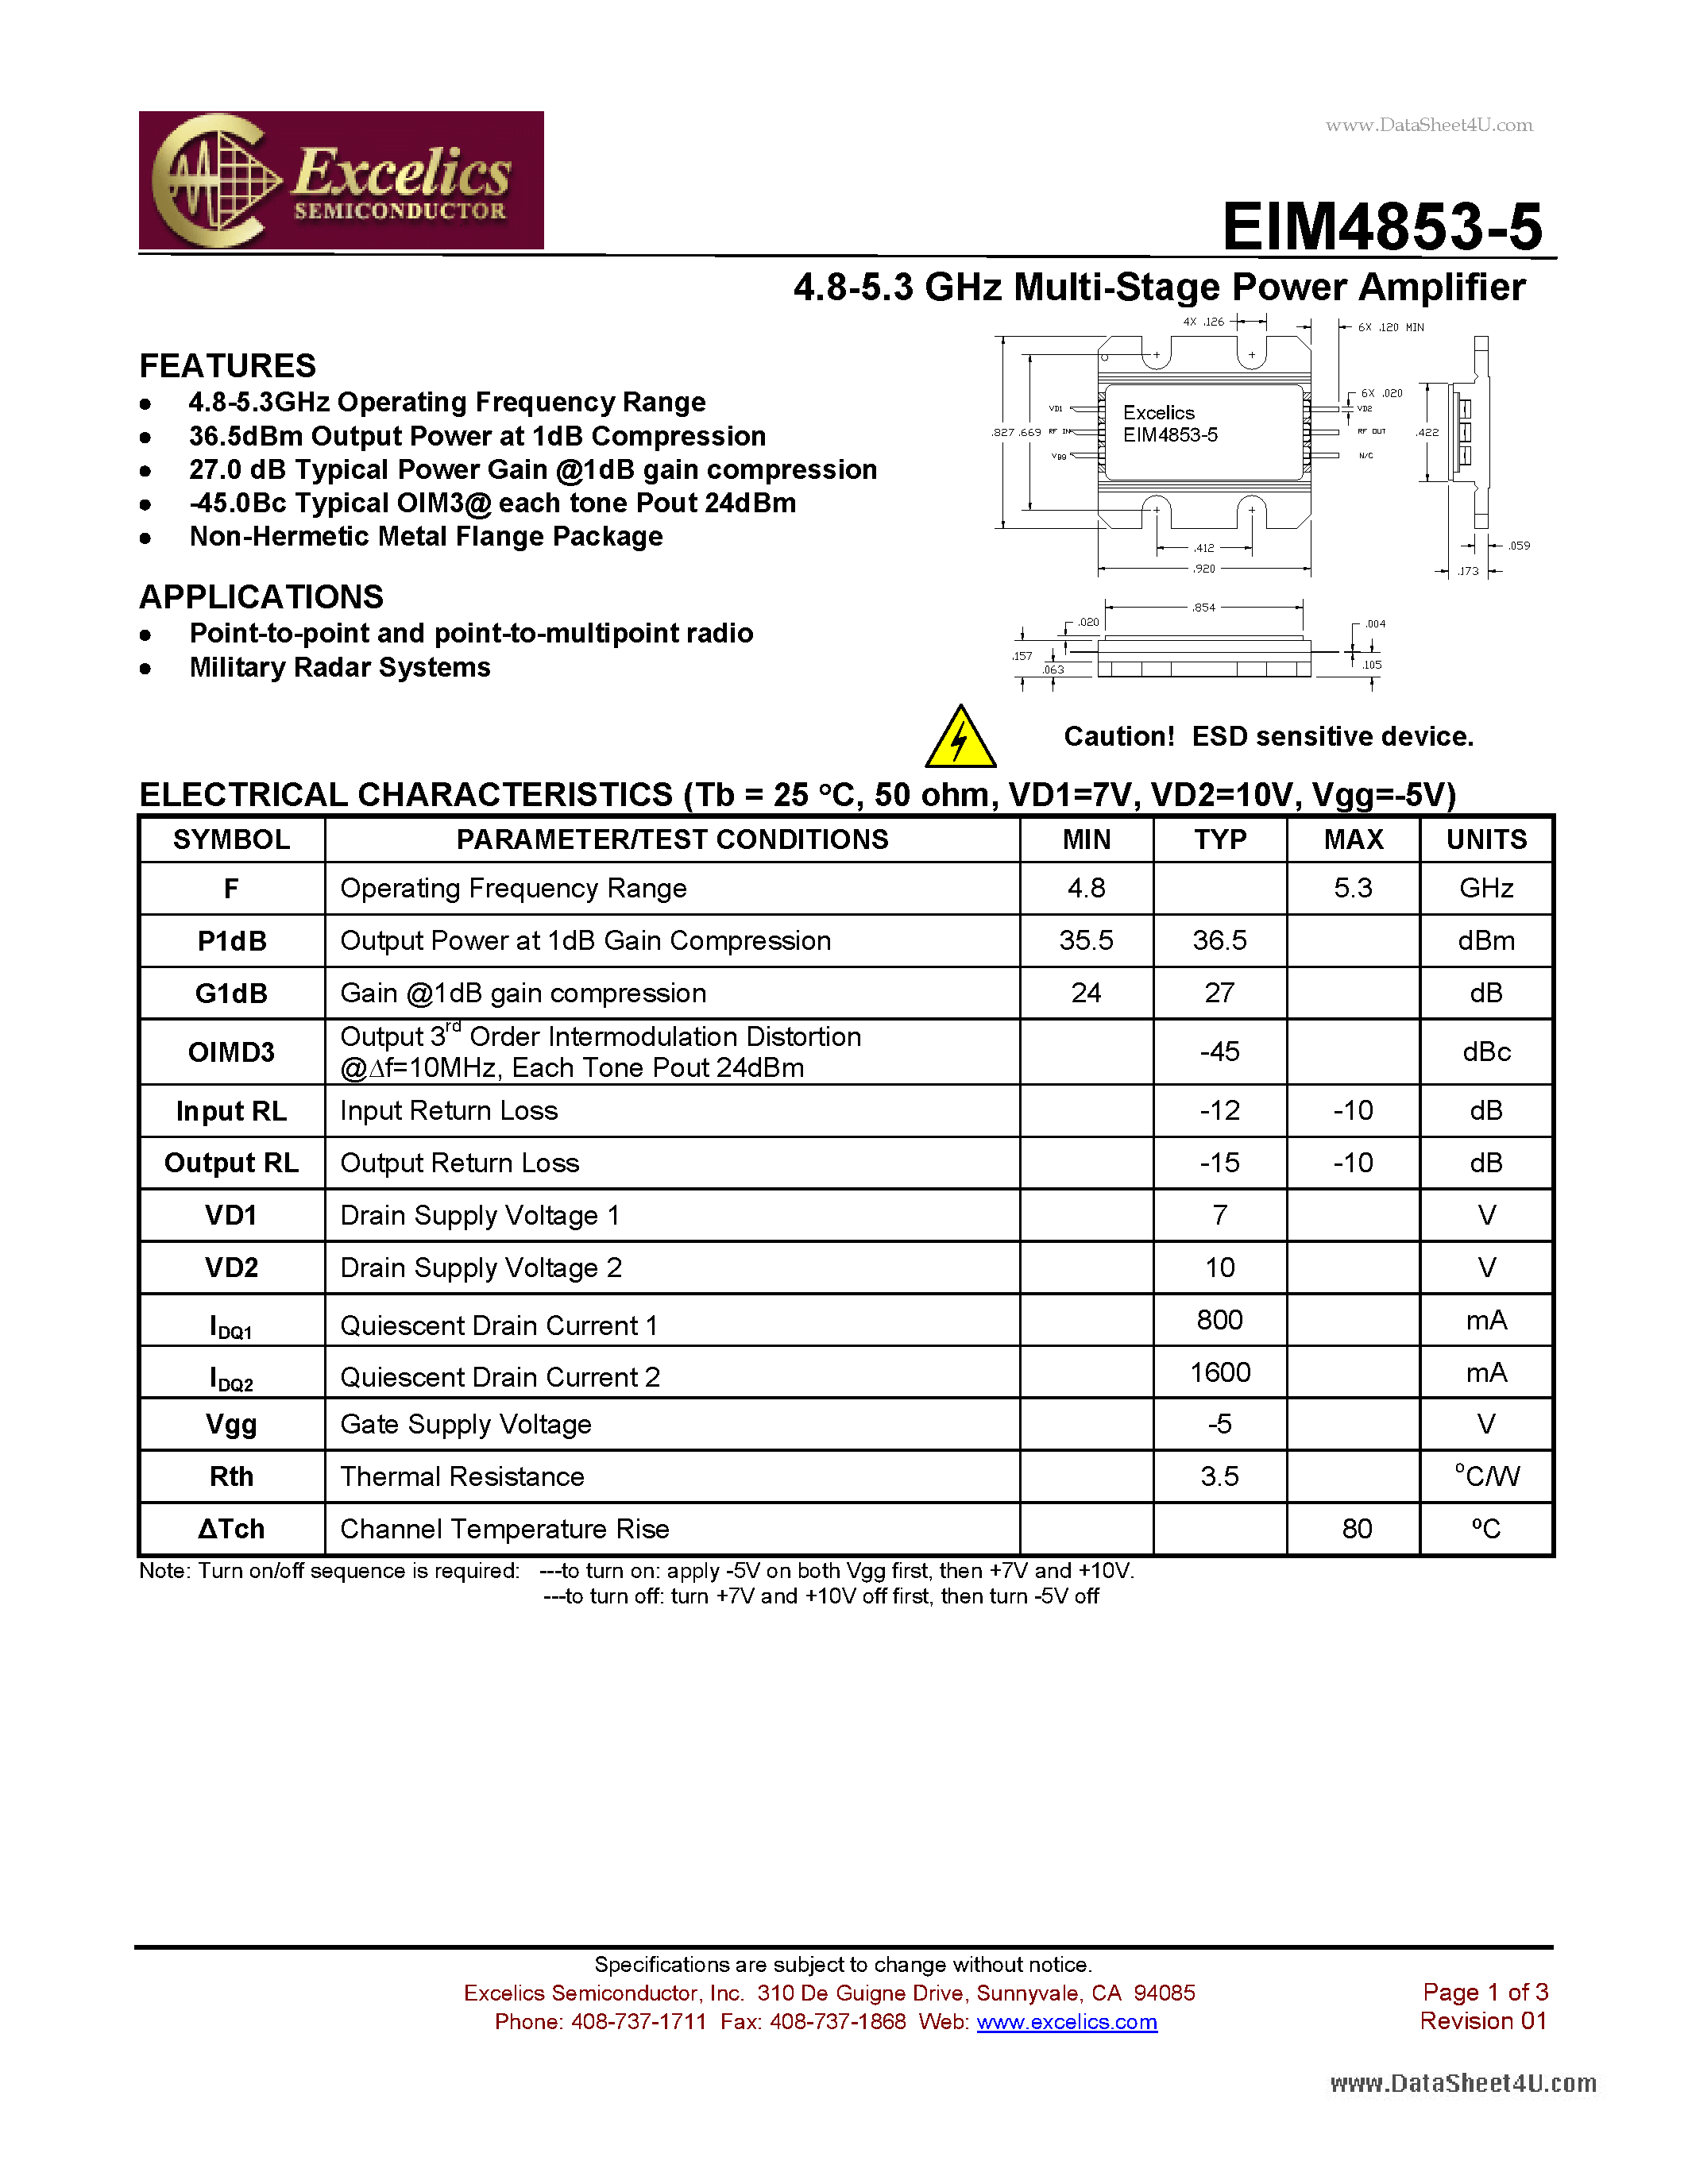 Datasheet EIM4853-5 - 4.8-5.3 GHz Multi-Stage Power Amplifier page 1